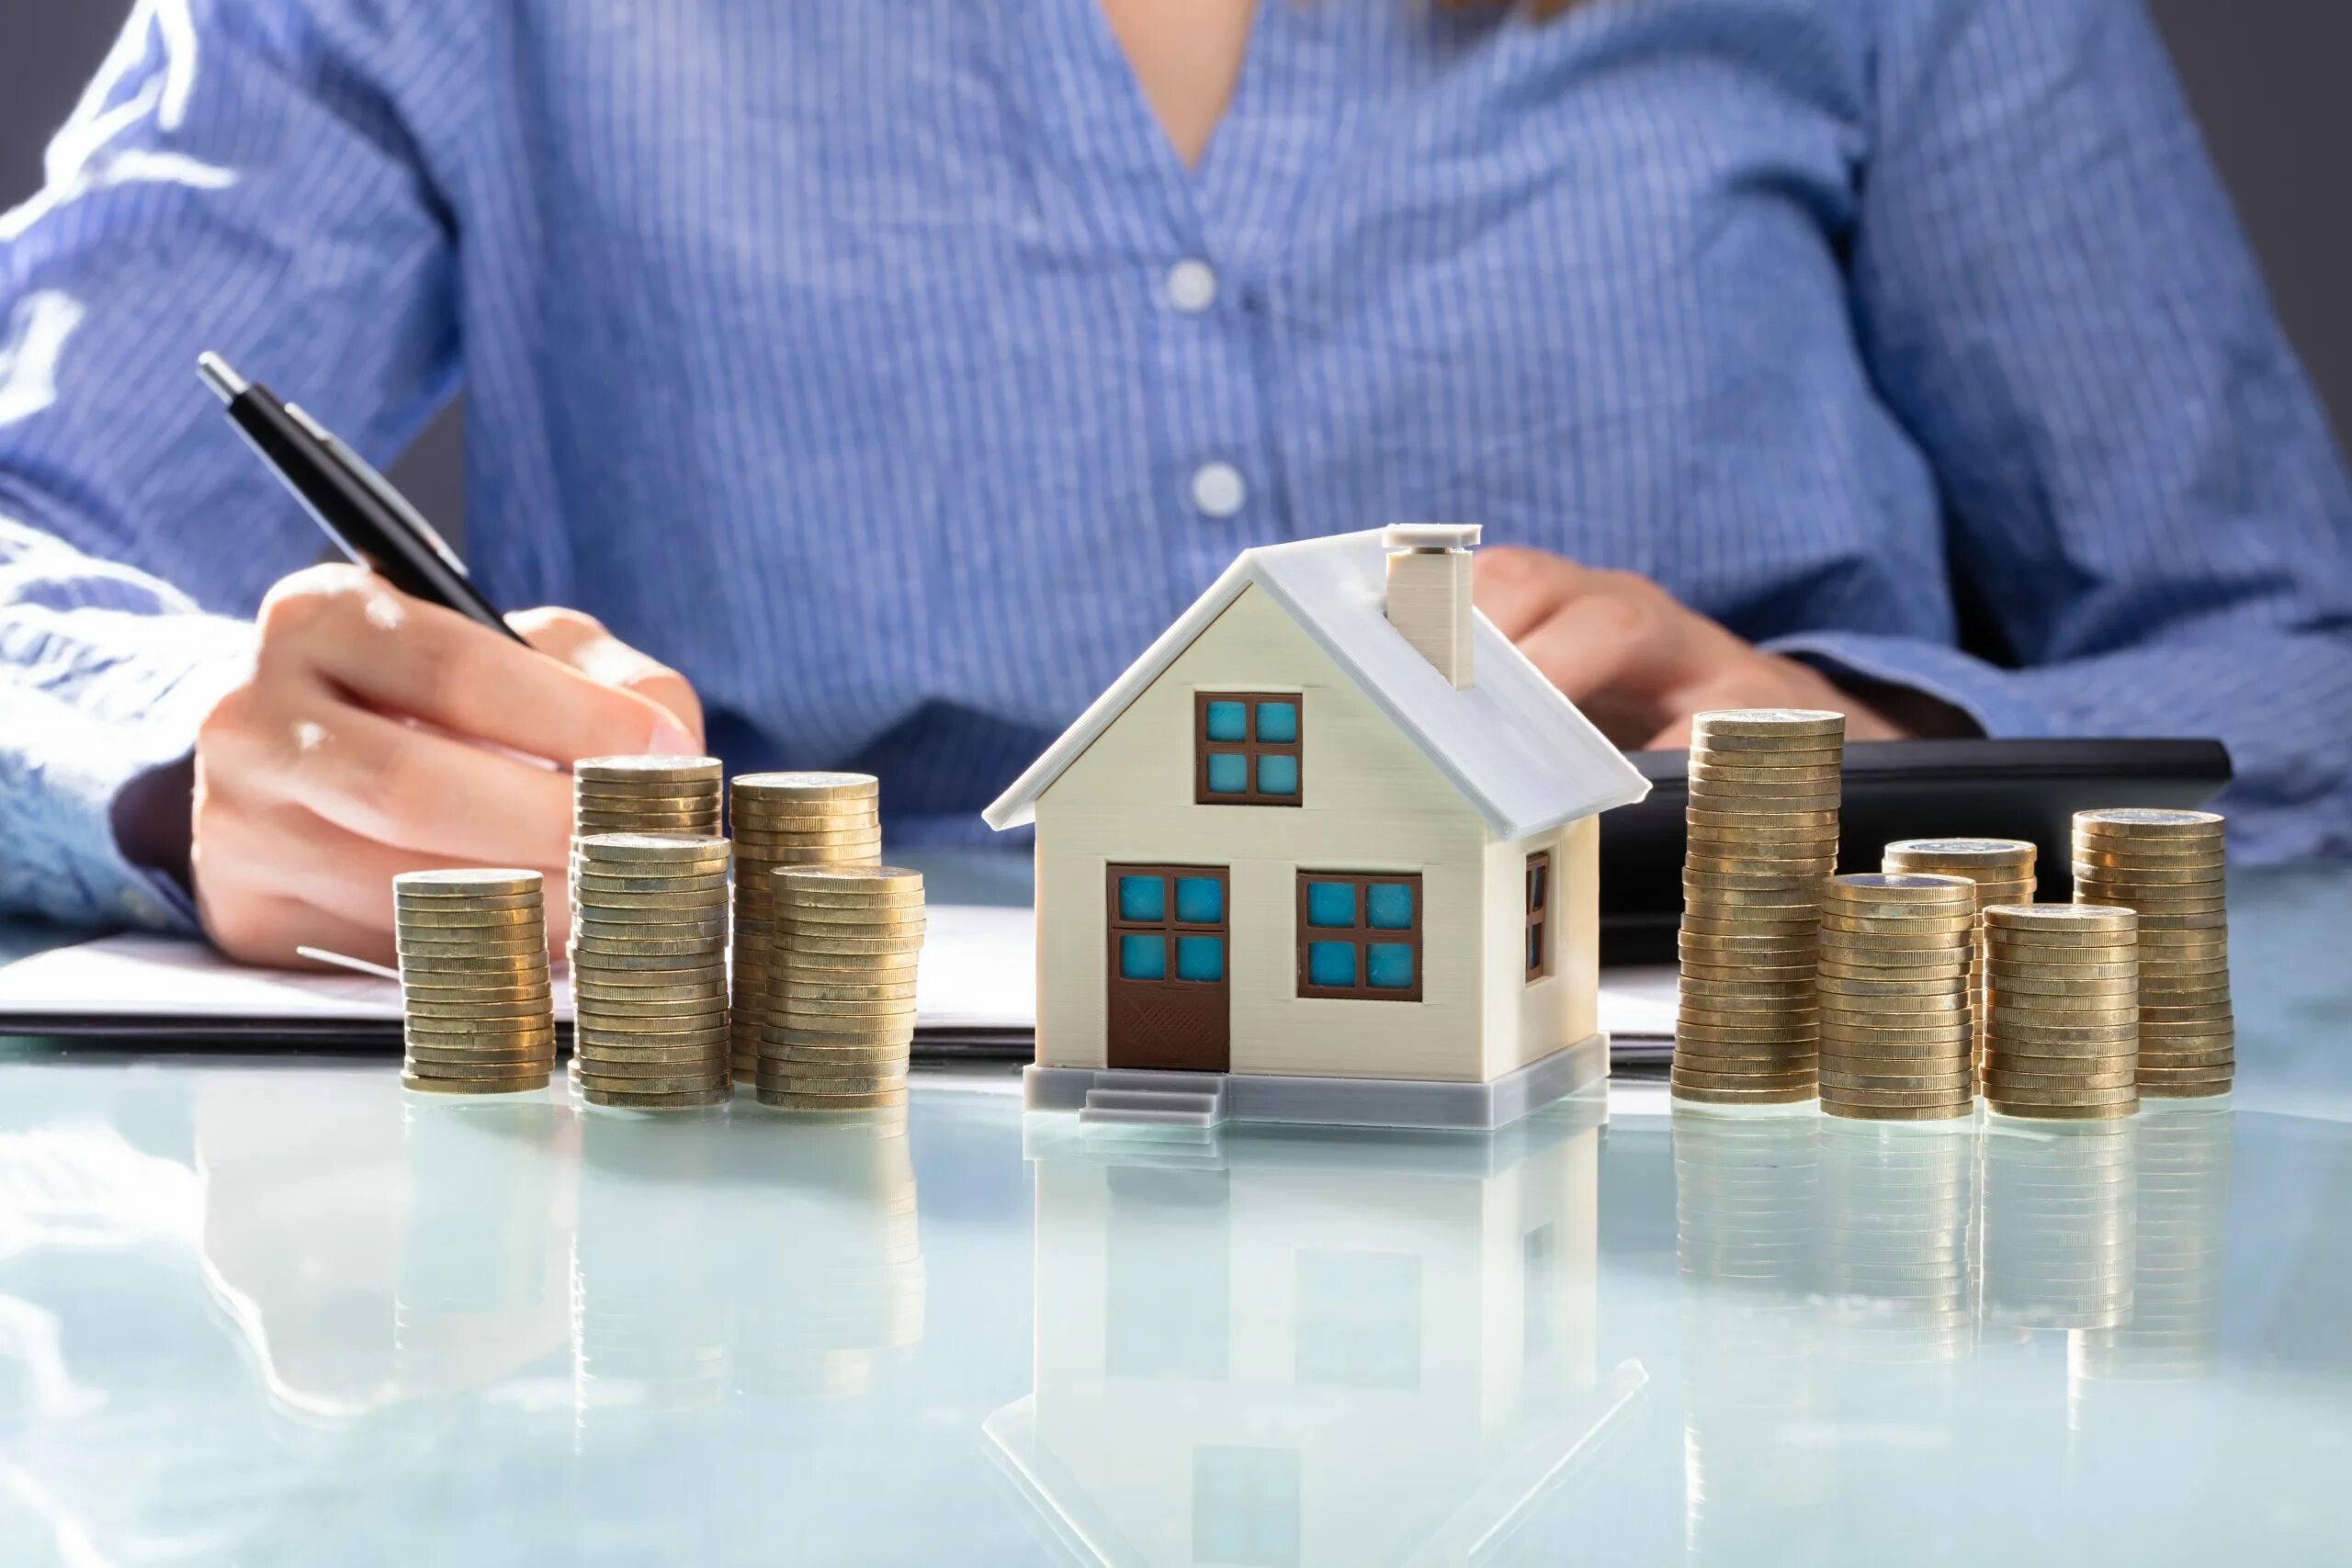 Налог на имущество. Субсидия для дома. Стоимость недвижимости. Финансовая грамотность и недвижимость. House report